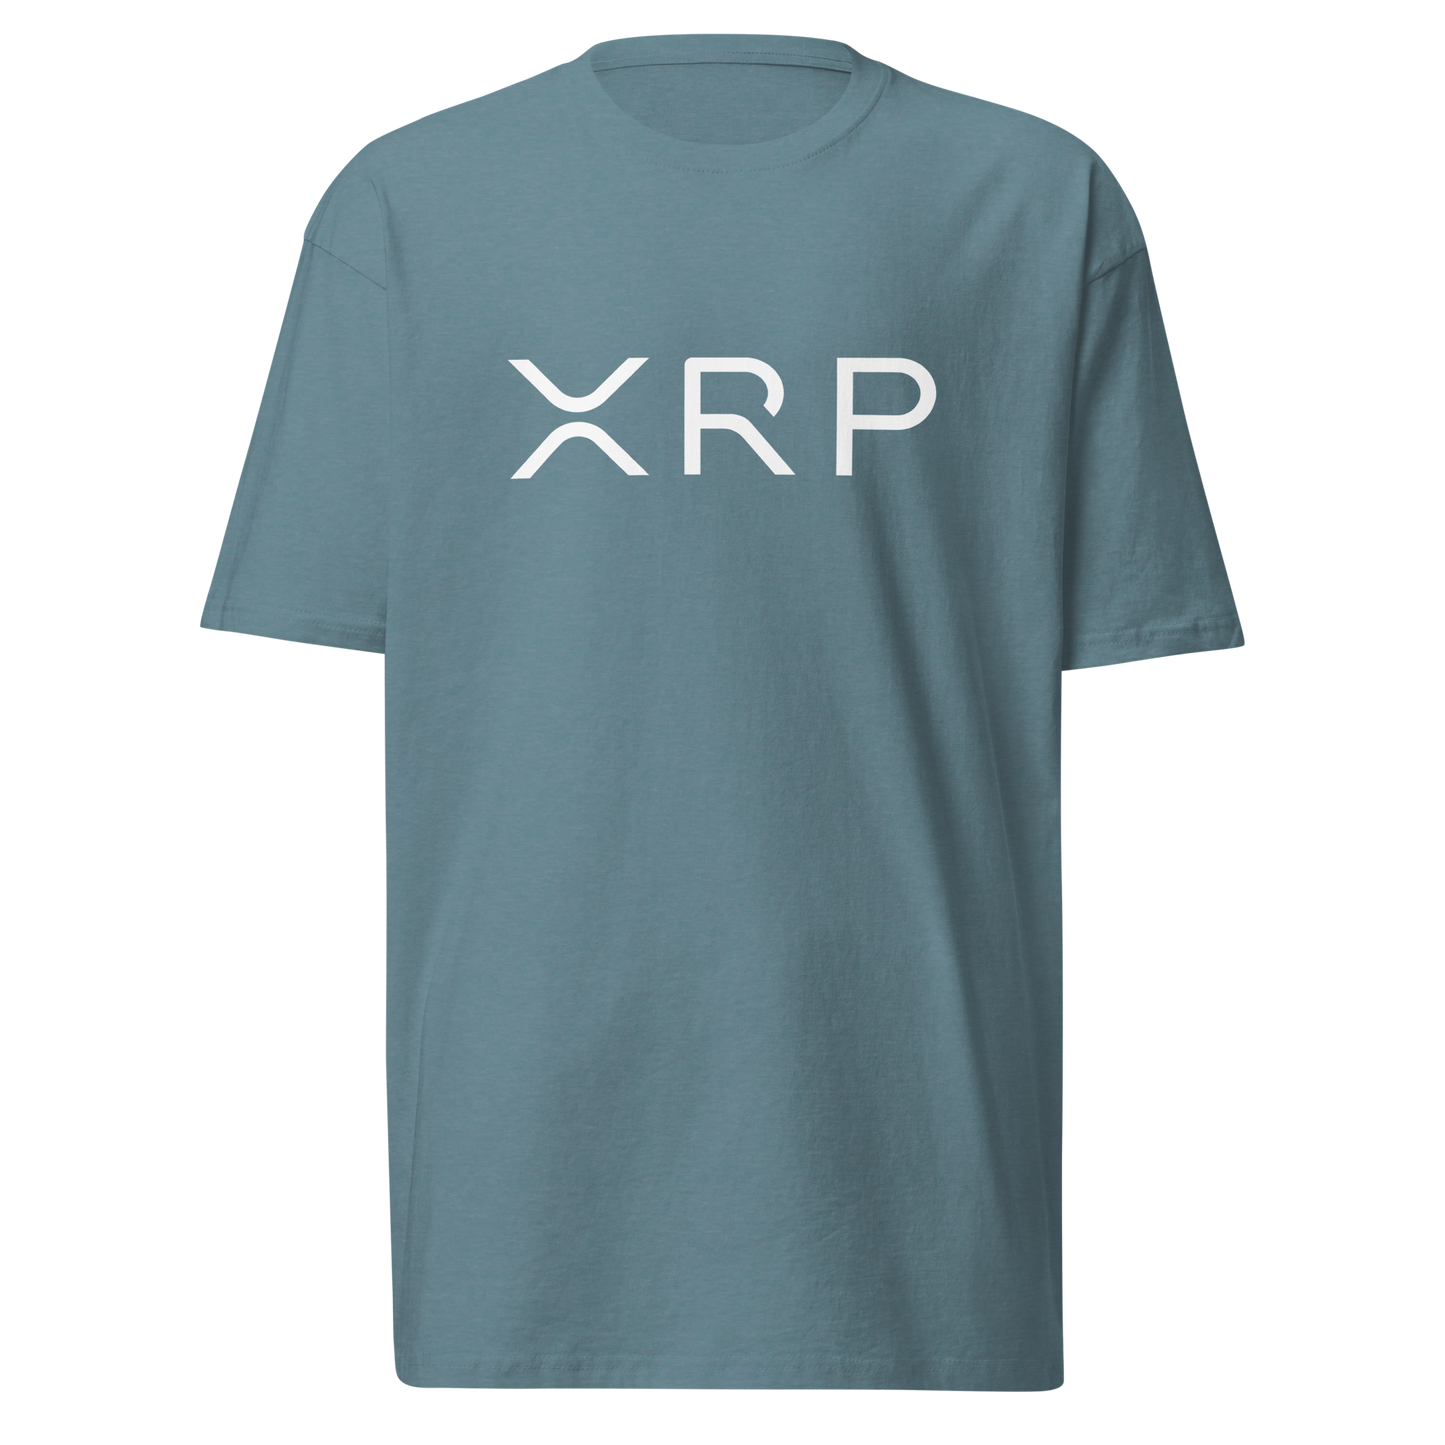 XRP White Text - Men’s premium heavyweight tee